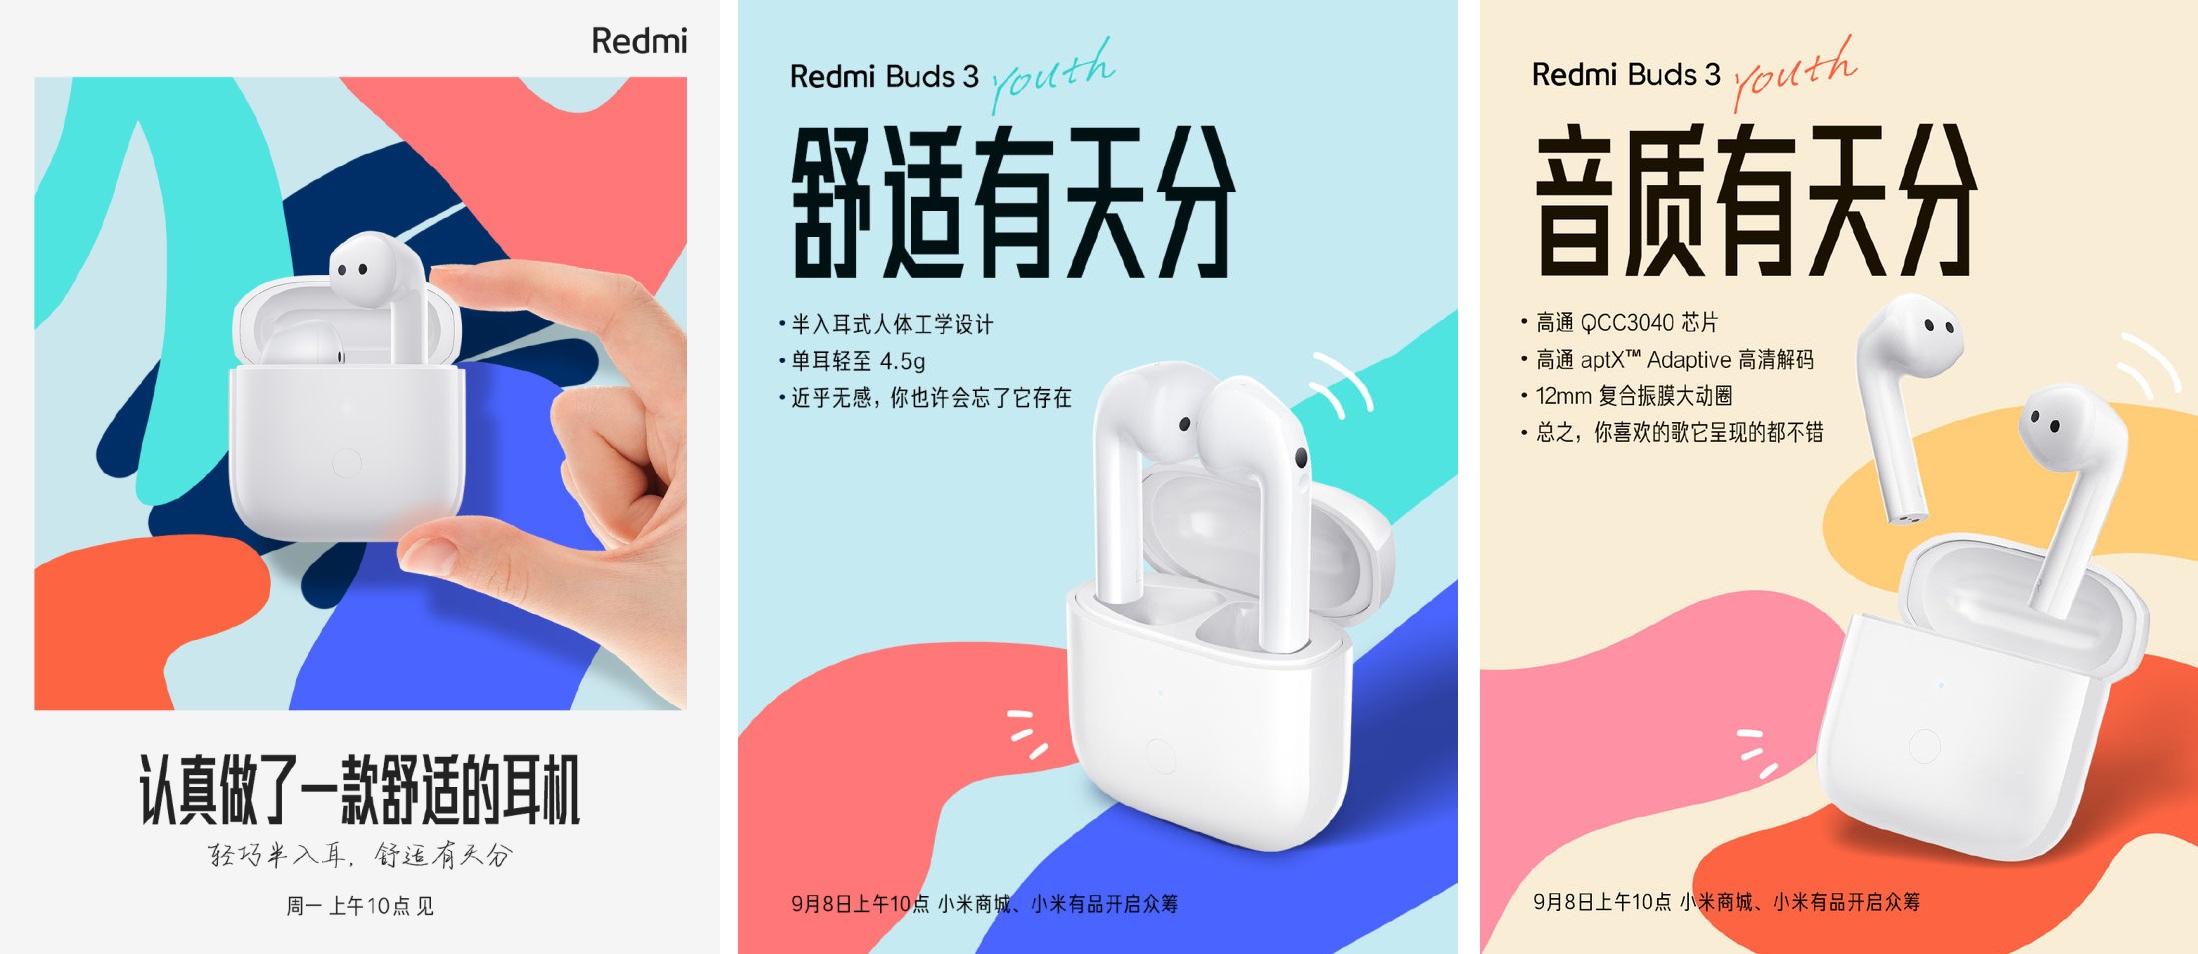 Xiaomi kündigt die superbilligen TWS-Kopfhörer Redmi Buds 3 an